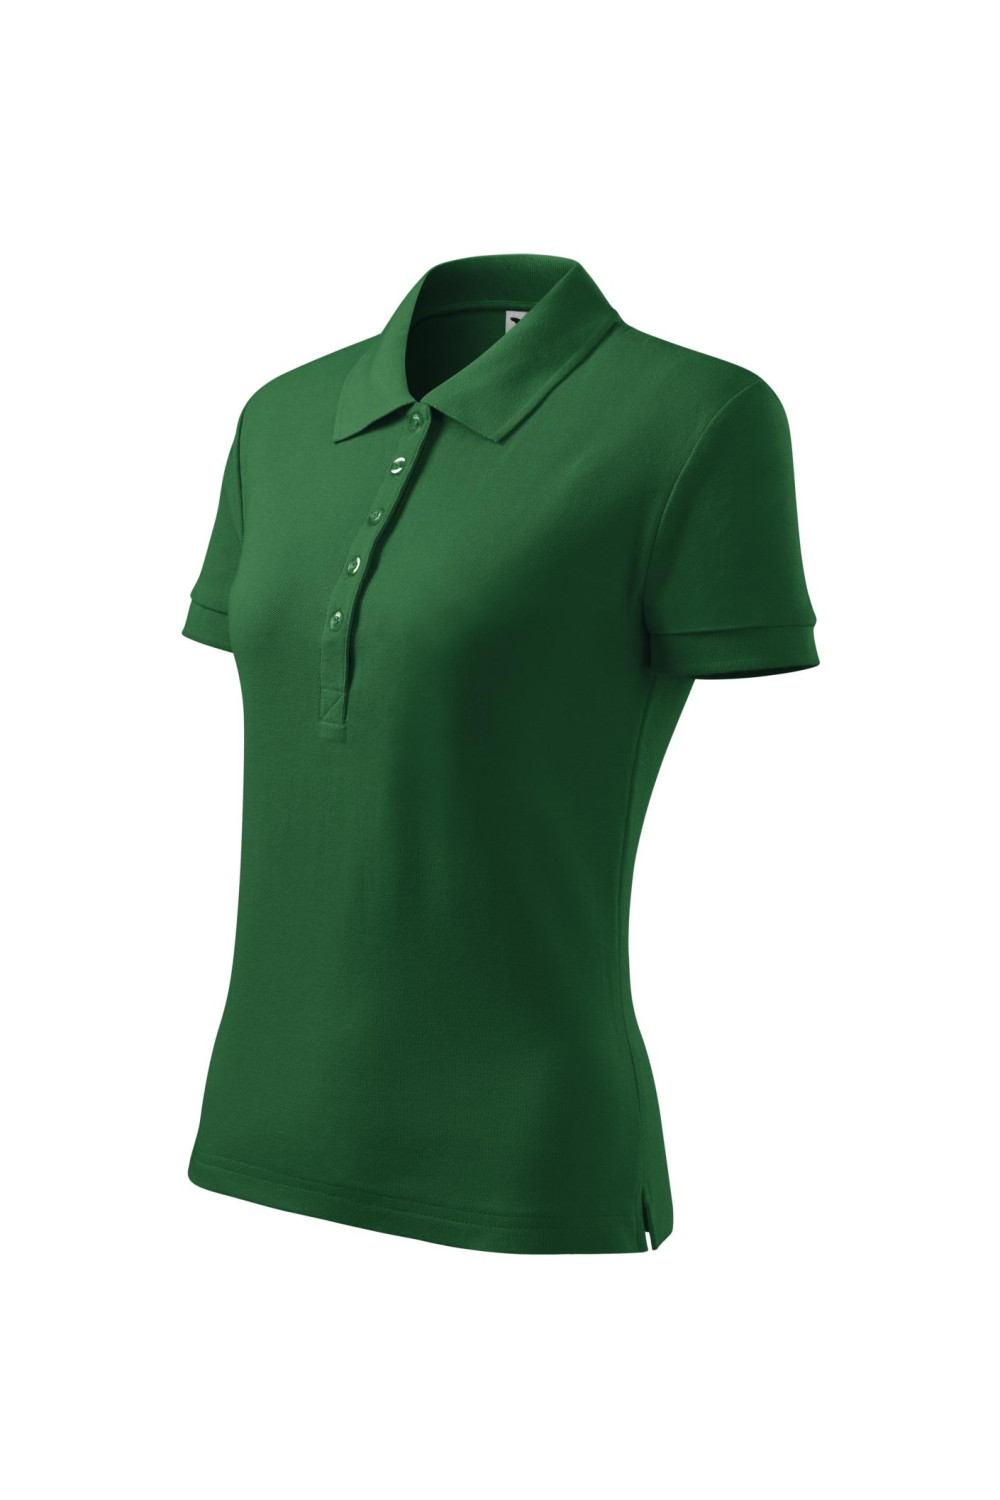 COTTON 213 MALFINI ADLER Koszulka Polo damska klasyczna 100% bawełna zieleń butelkowa